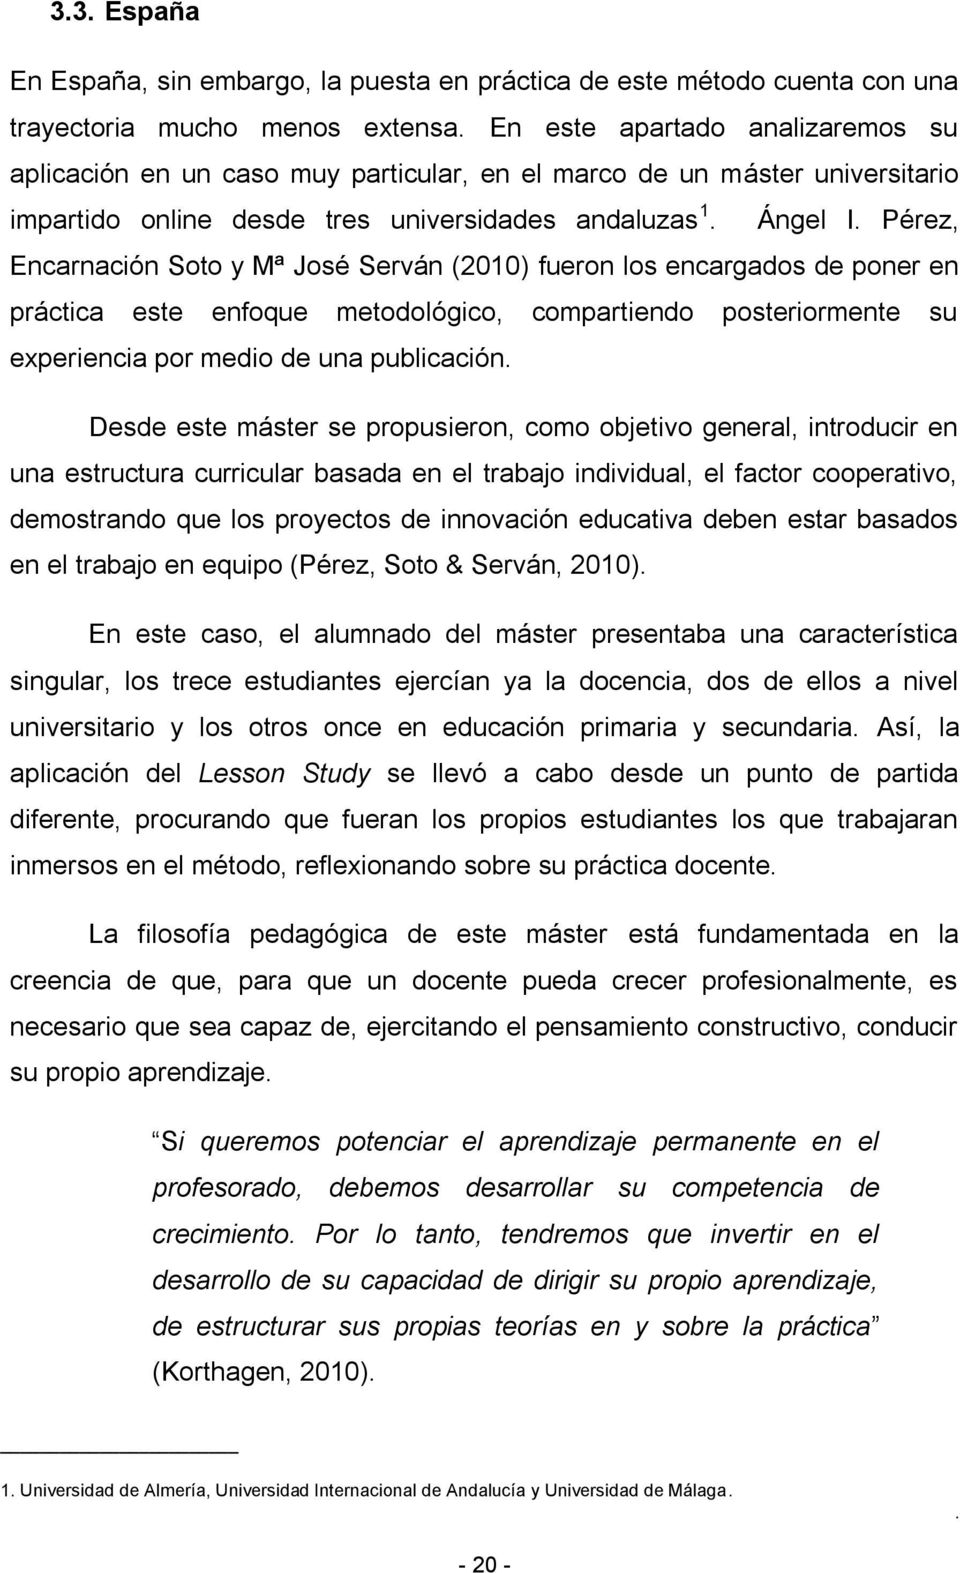 Pérez, Encarnación Soto y Mª José Serván (2010) fueron los encargados de poner en práctica este enfoque metodológico, compartiendo posteriormente su experiencia por medio de una publicación.